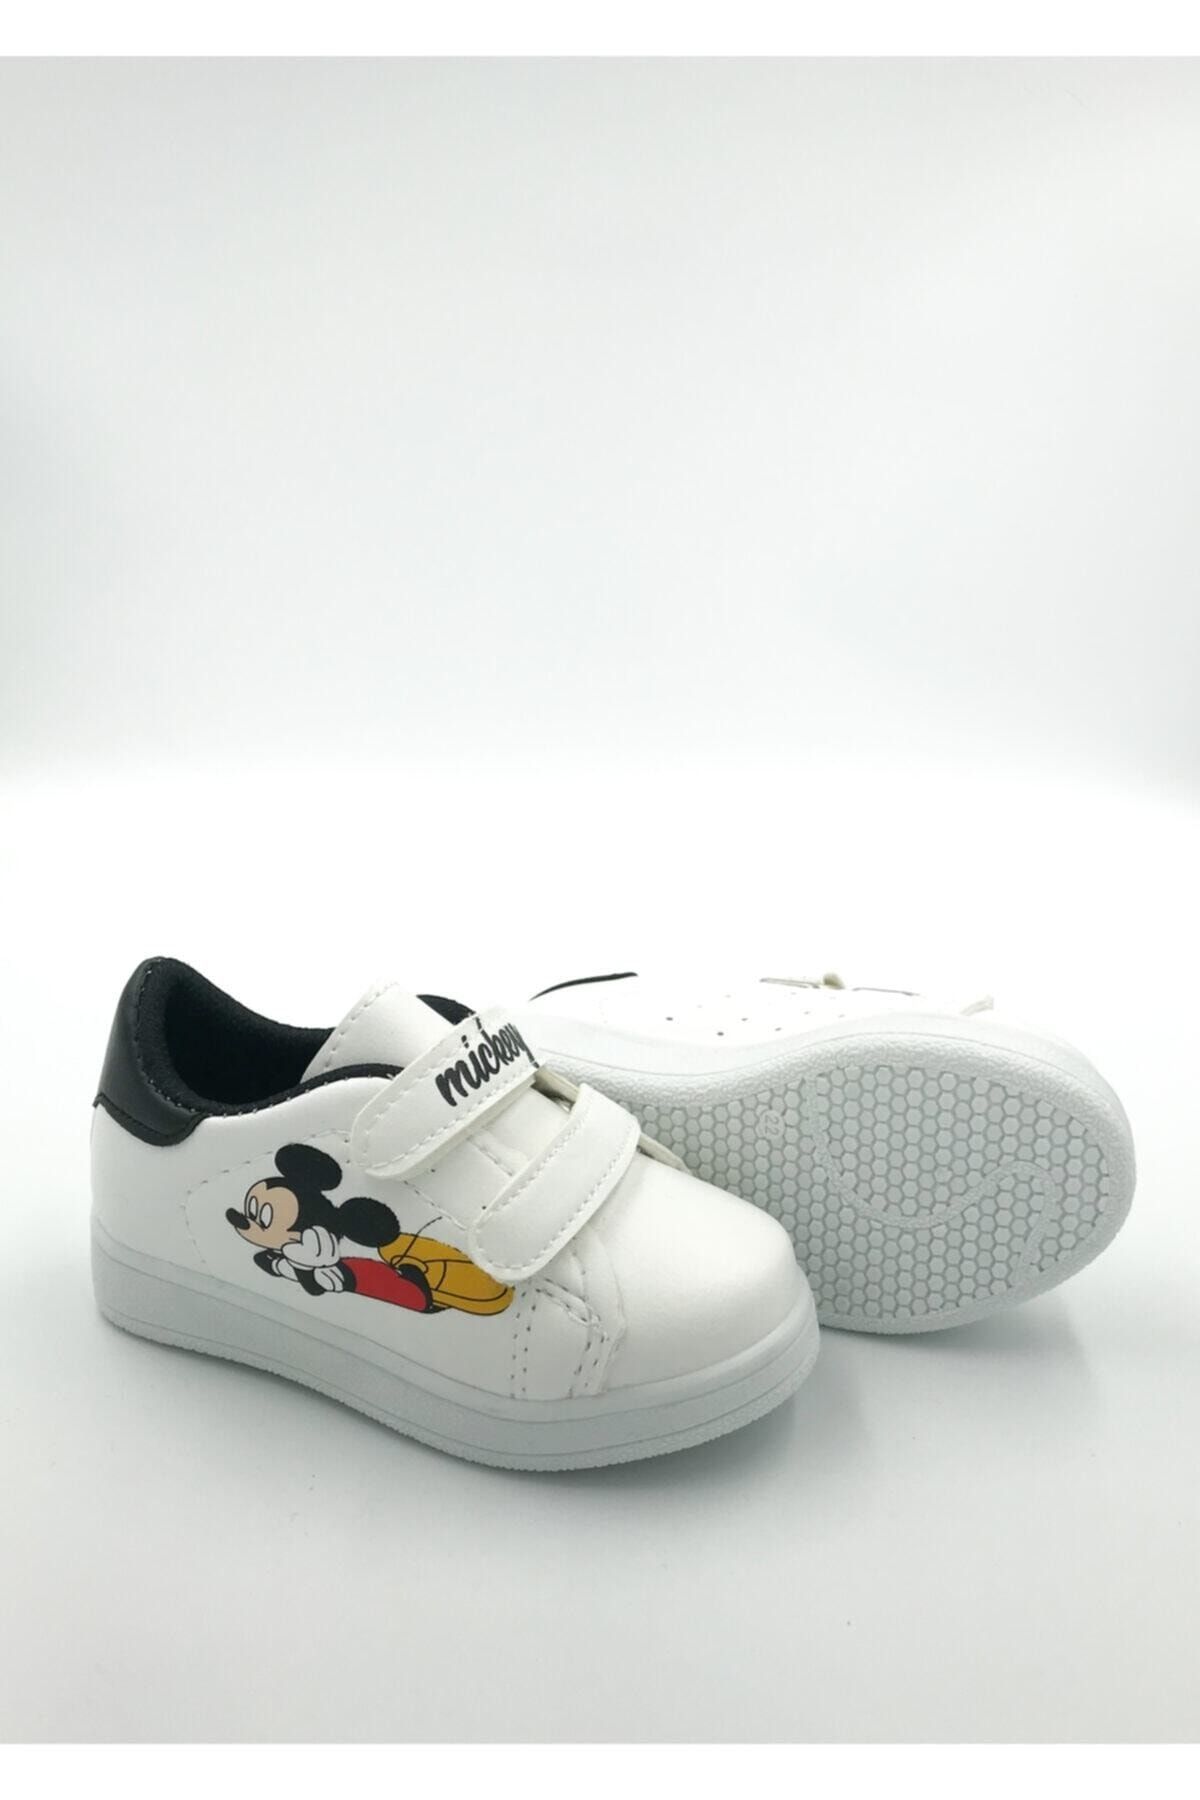 DARKLOW Md-01 Mickey Desenli Çocuk Spor Sneaker Günlük Cırtlı Spor Ayakkabı Beyaz-siyah